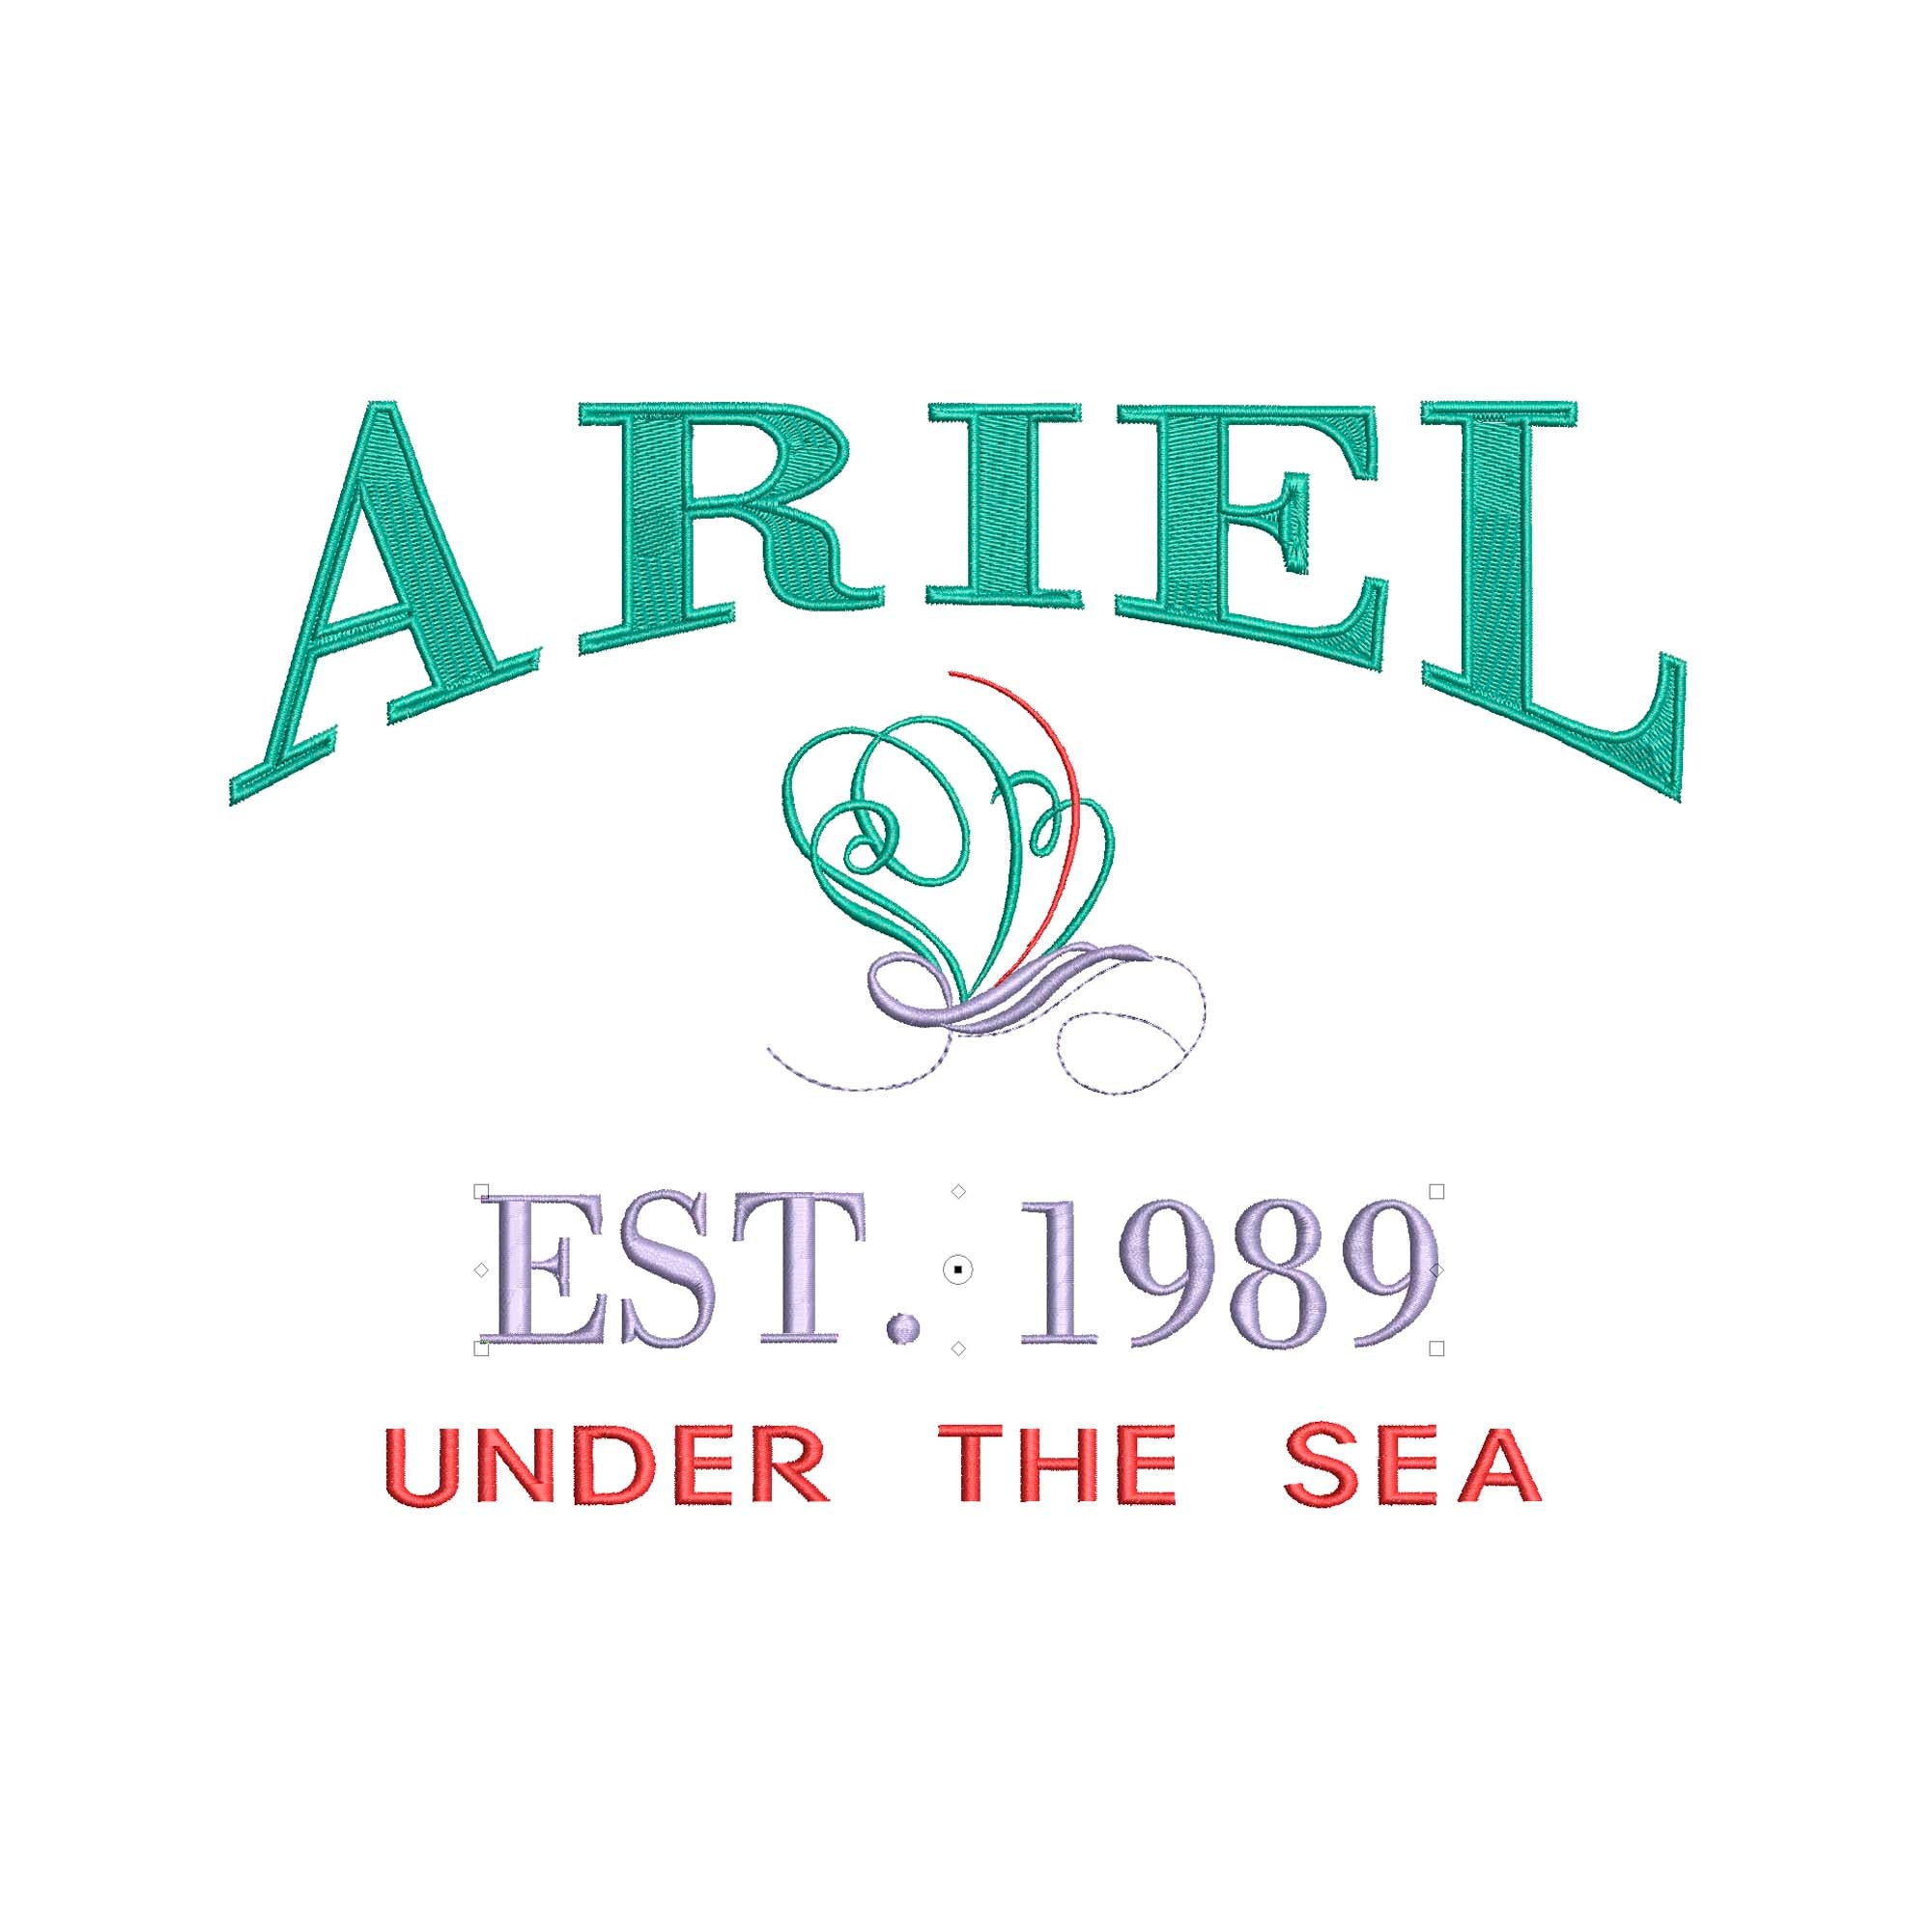 Ariel Bath